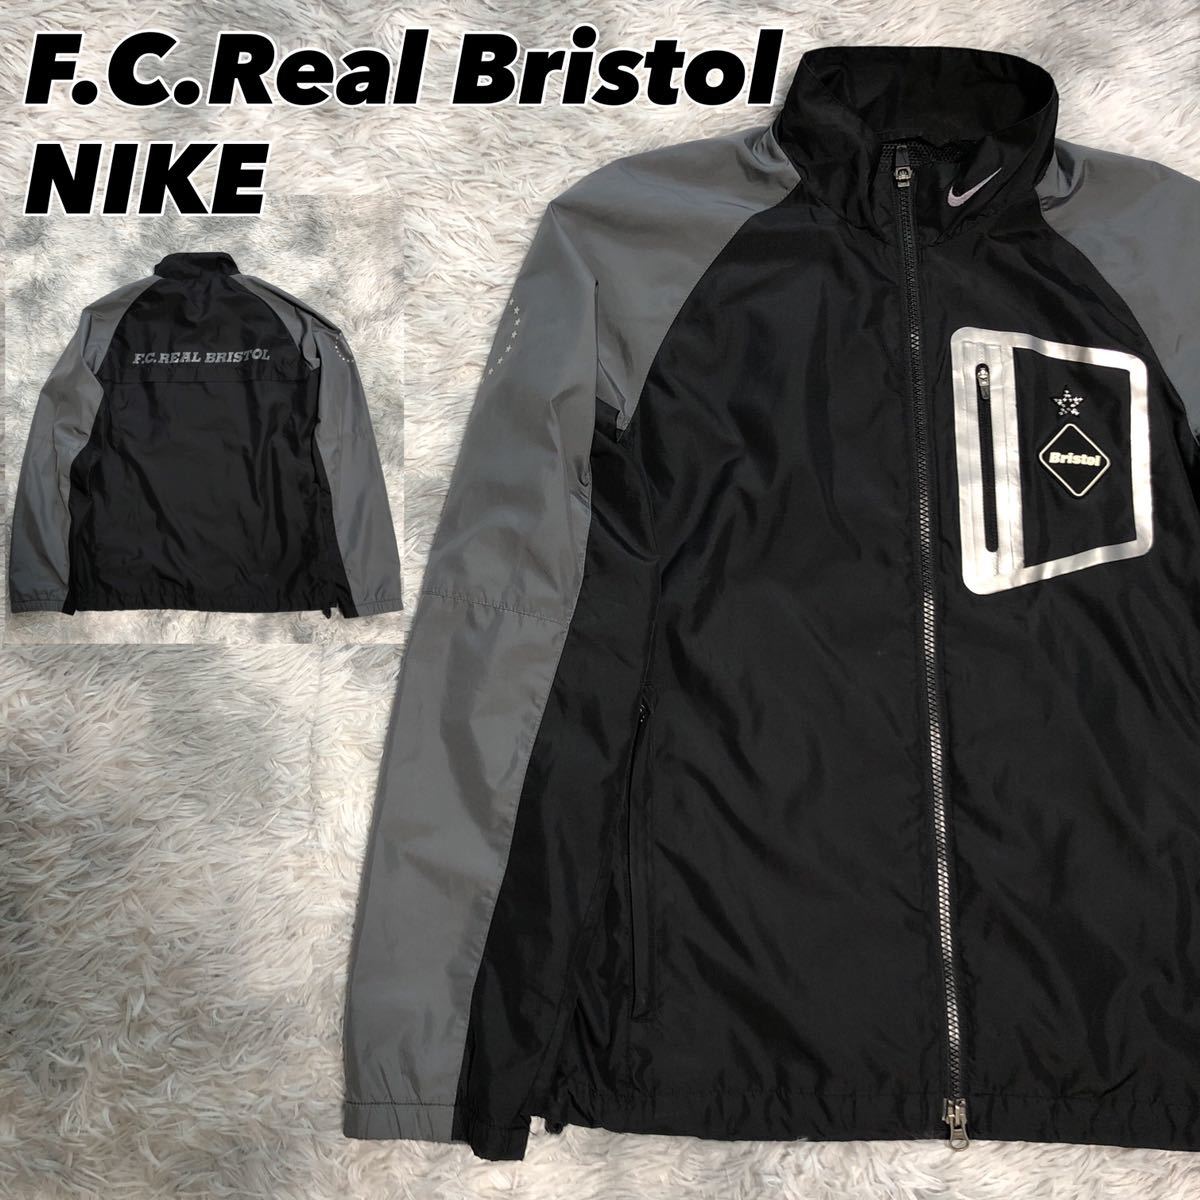 特価 NIKE F.C. Real Bristol FCRB ナイロンジャケット ナイロンジャケット